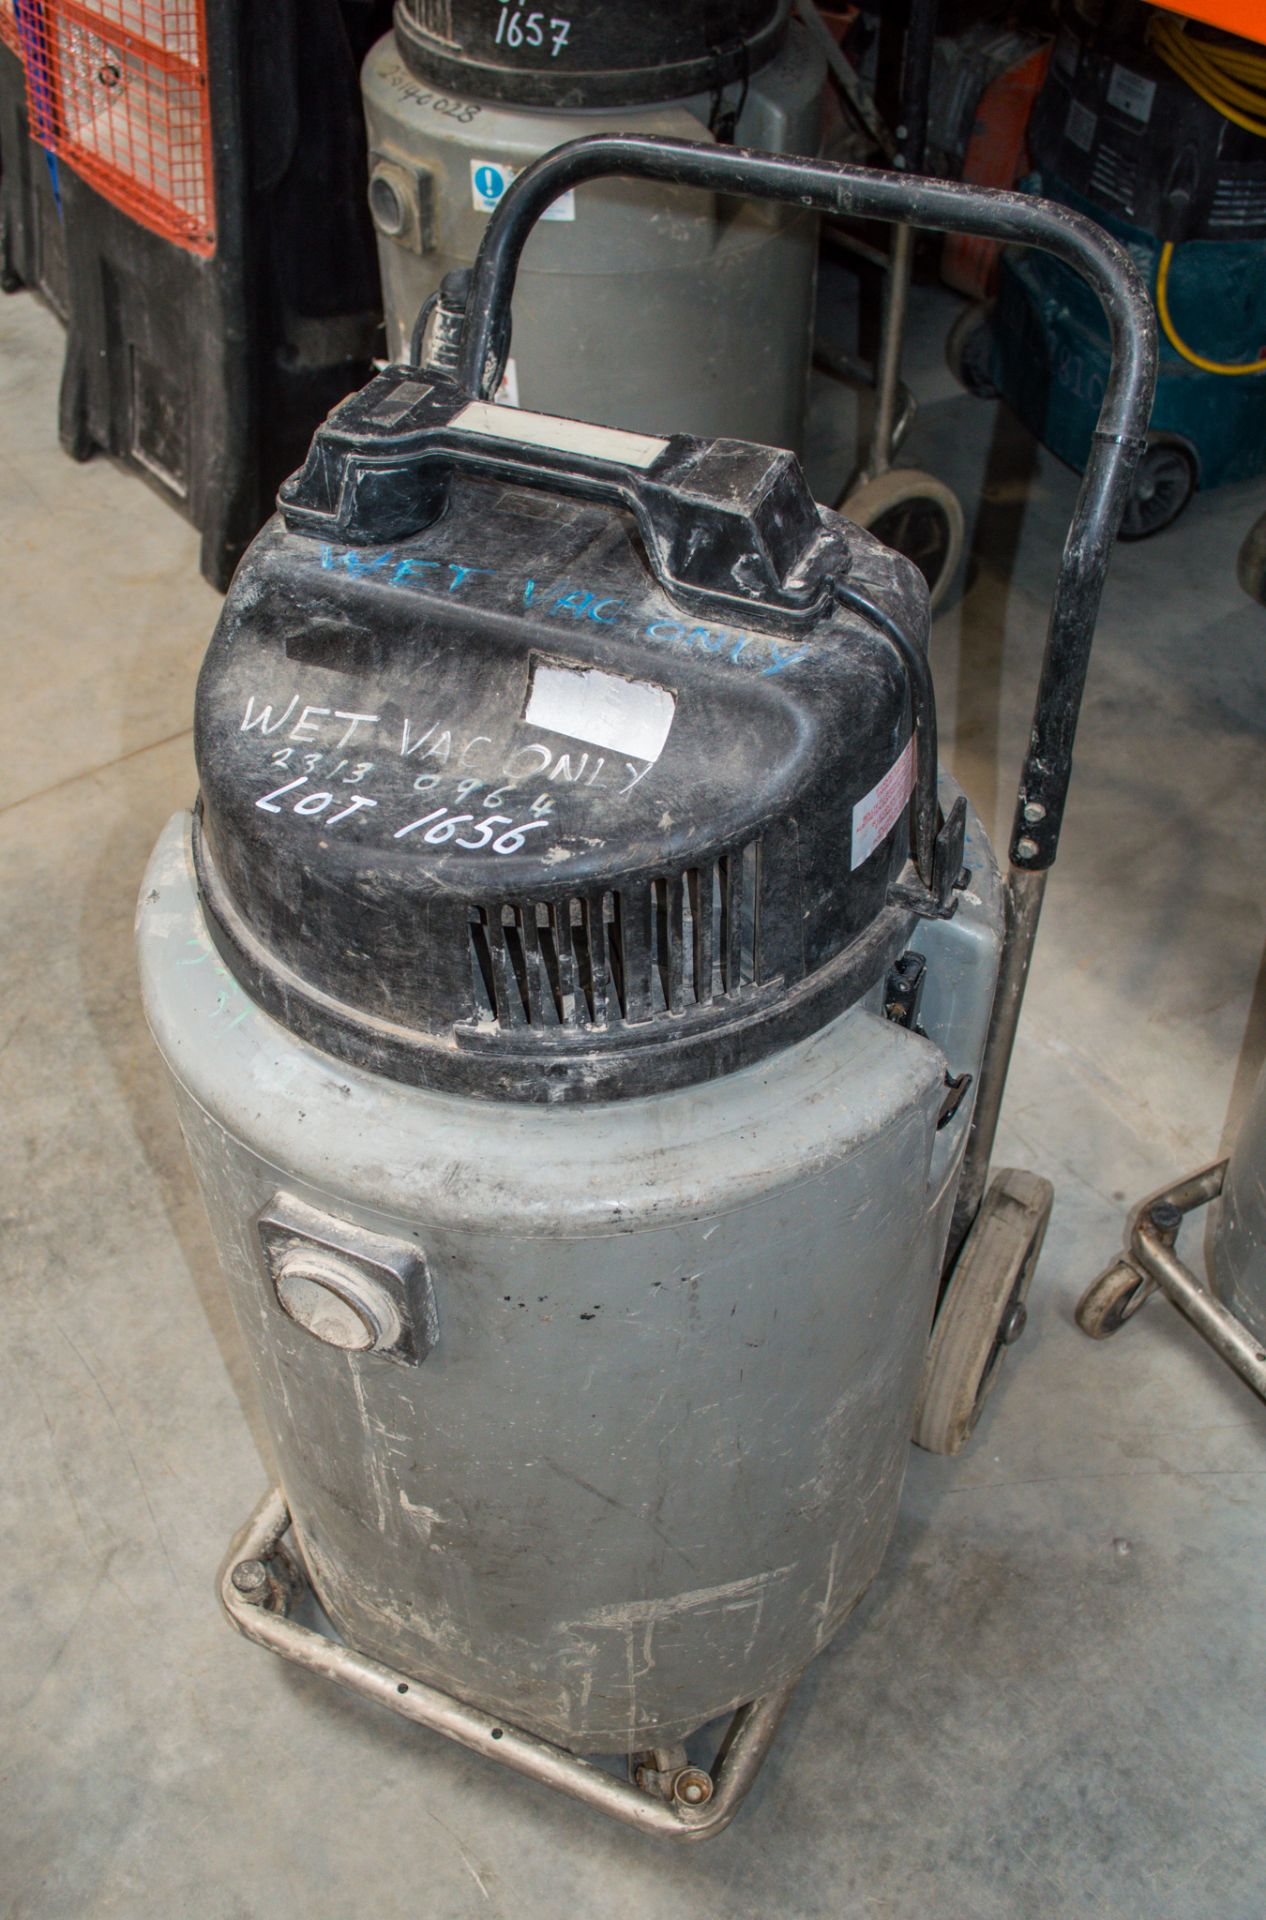 Numatic 110v industrial vacuum cleaner 23130964